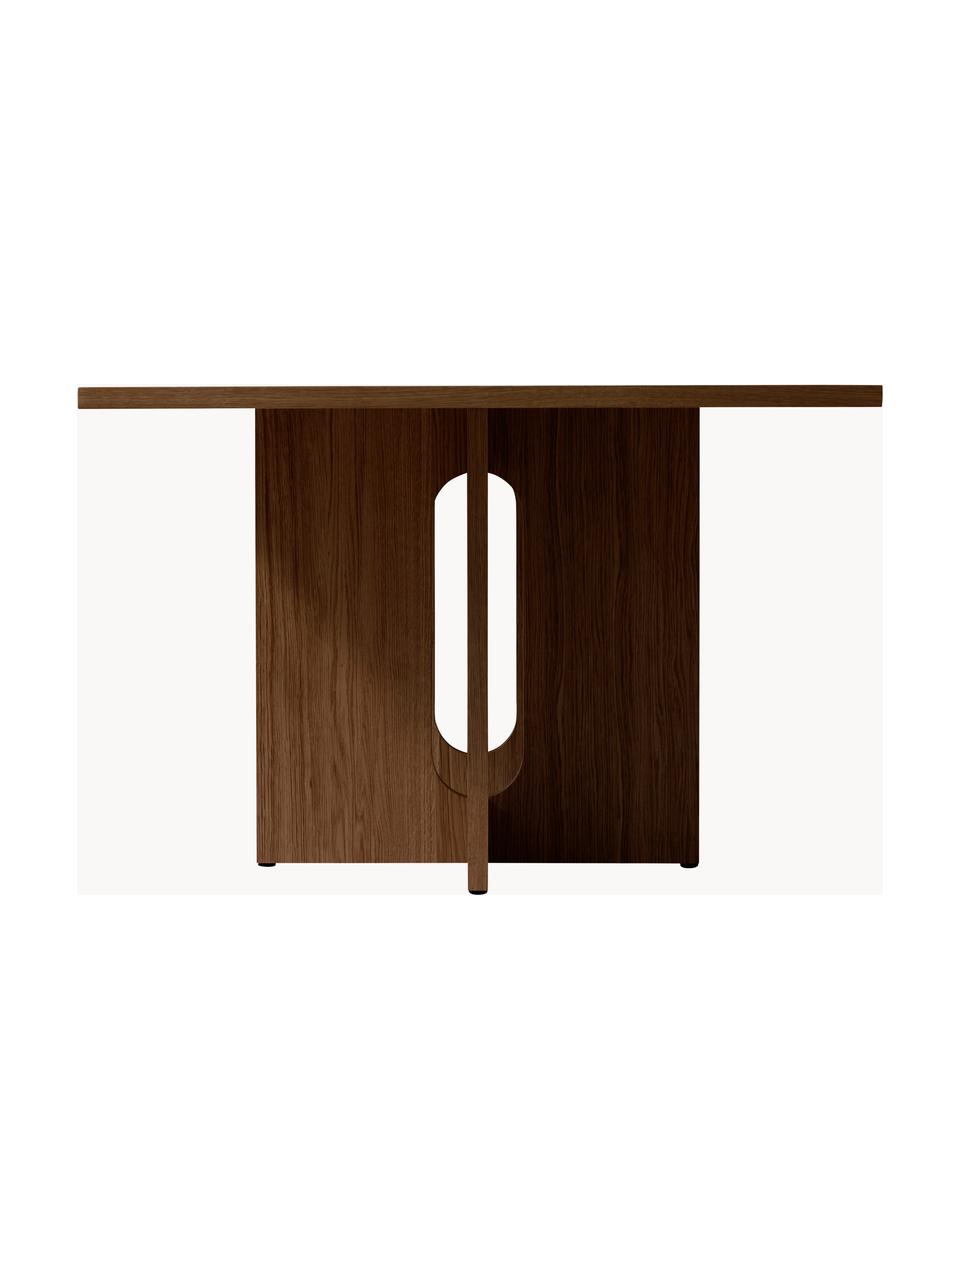 Jídelní stůl Androgyne, různé velikosti, Dřevovláknitá deska střední hustoty (MDF) s dubovou dýhou, Dřevo, mořené na tmavo, Š 280 cm, H 110 cm